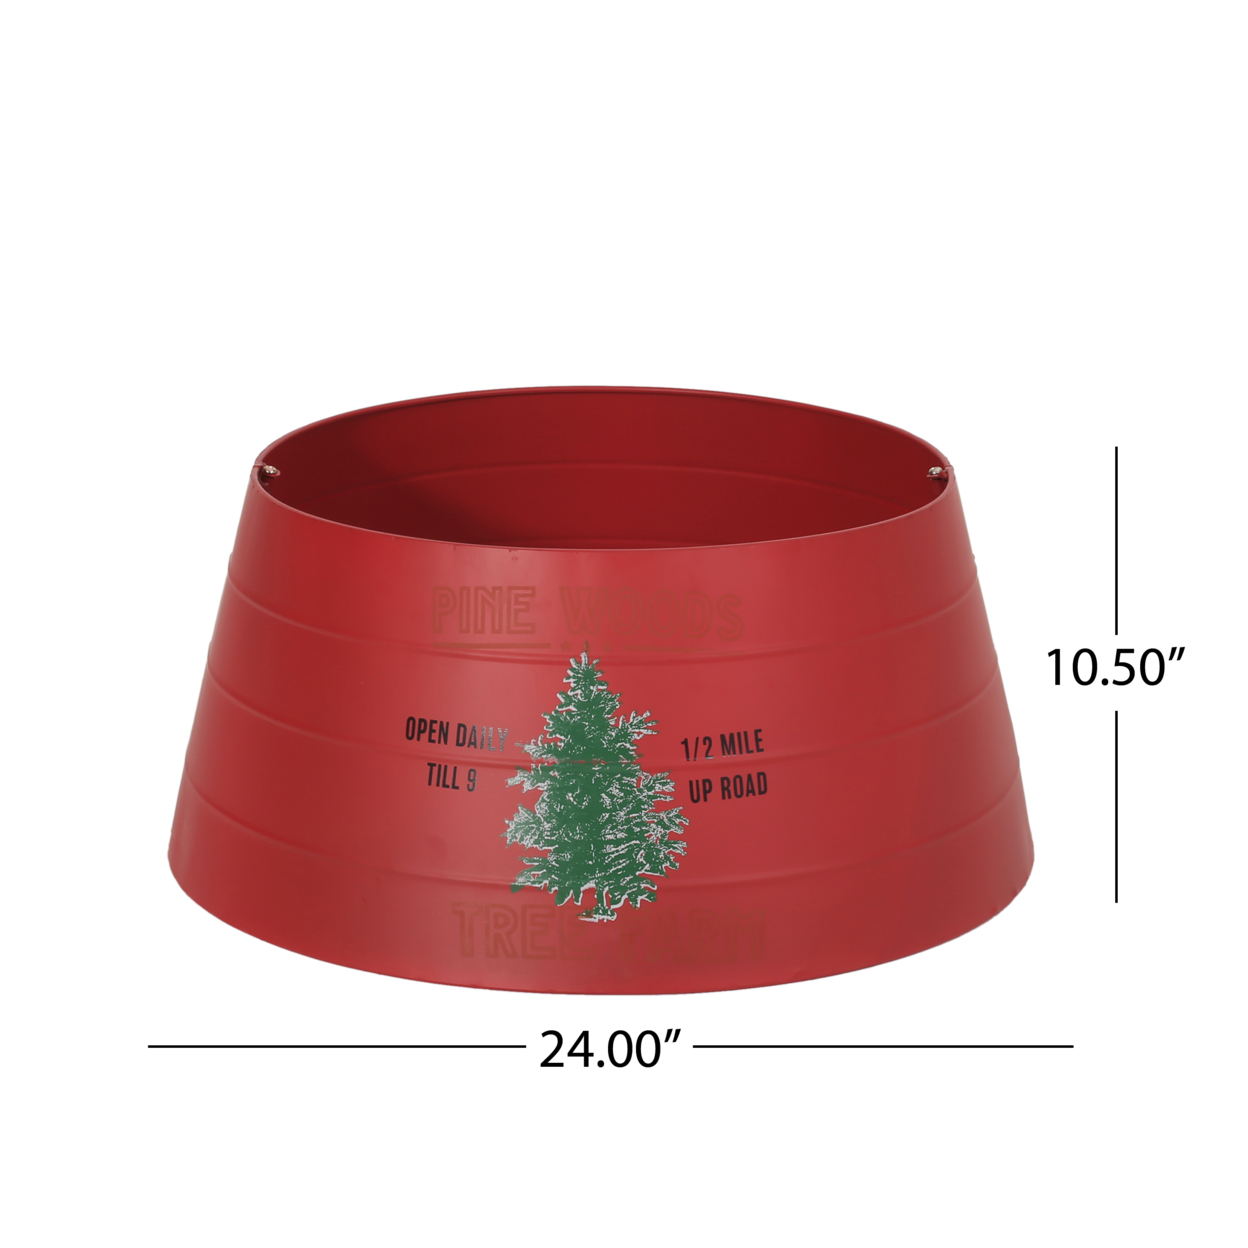 Gilmanton Metal Christmas Tree Collar, Red